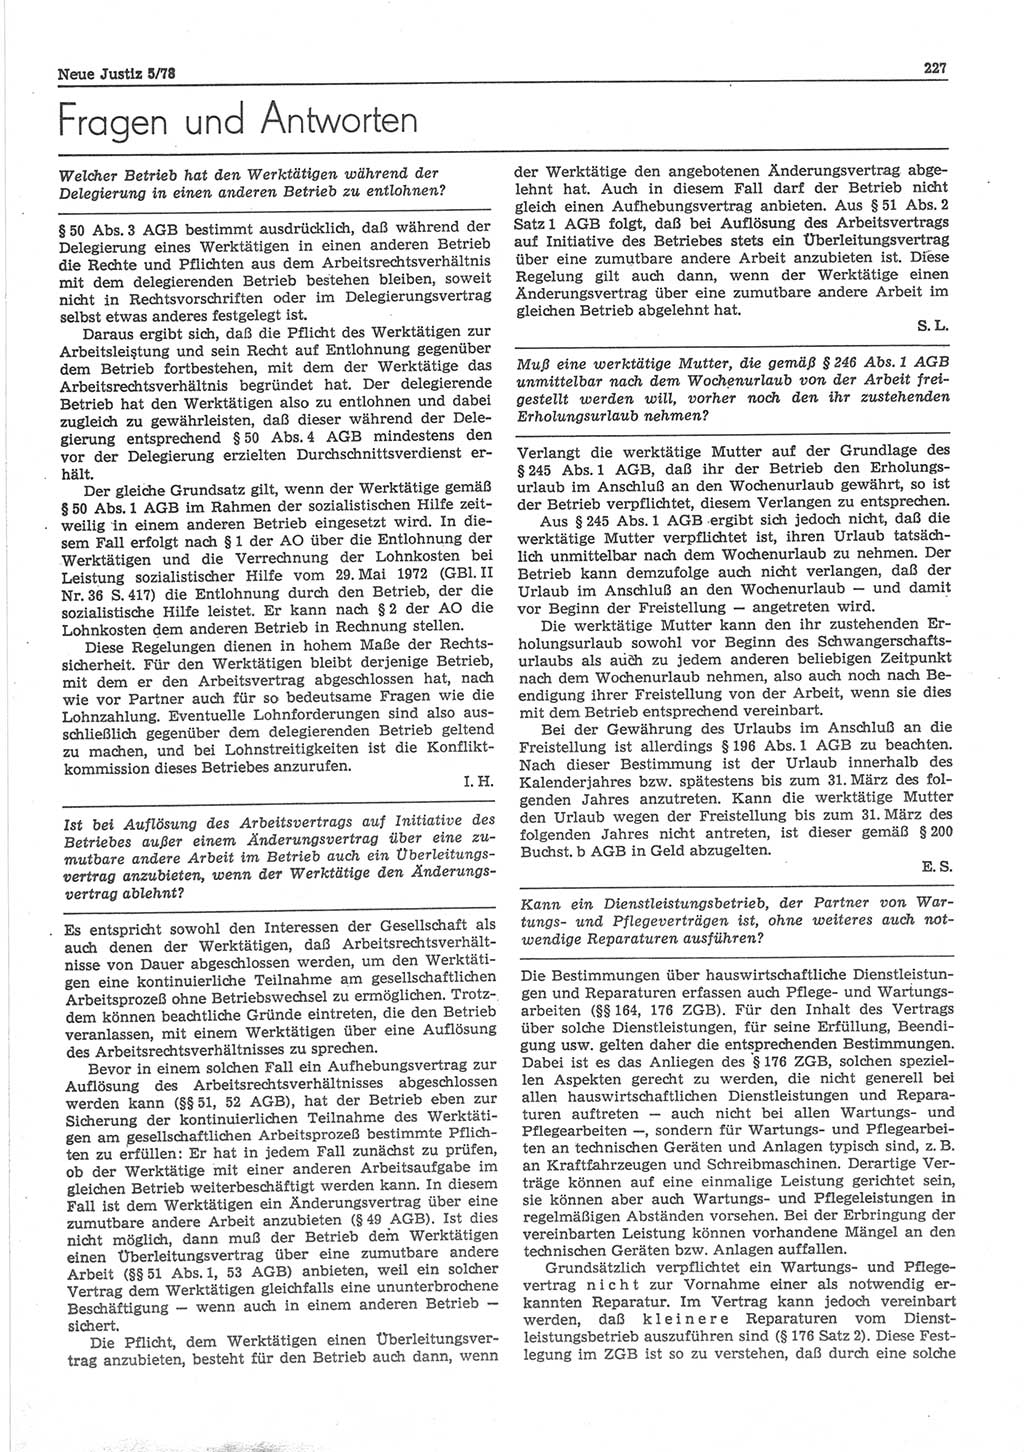 Neue Justiz (NJ), Zeitschrift für sozialistisches Recht und Gesetzlichkeit [Deutsche Demokratische Republik (DDR)], 32. Jahrgang 1978, Seite 227 (NJ DDR 1978, S. 227)